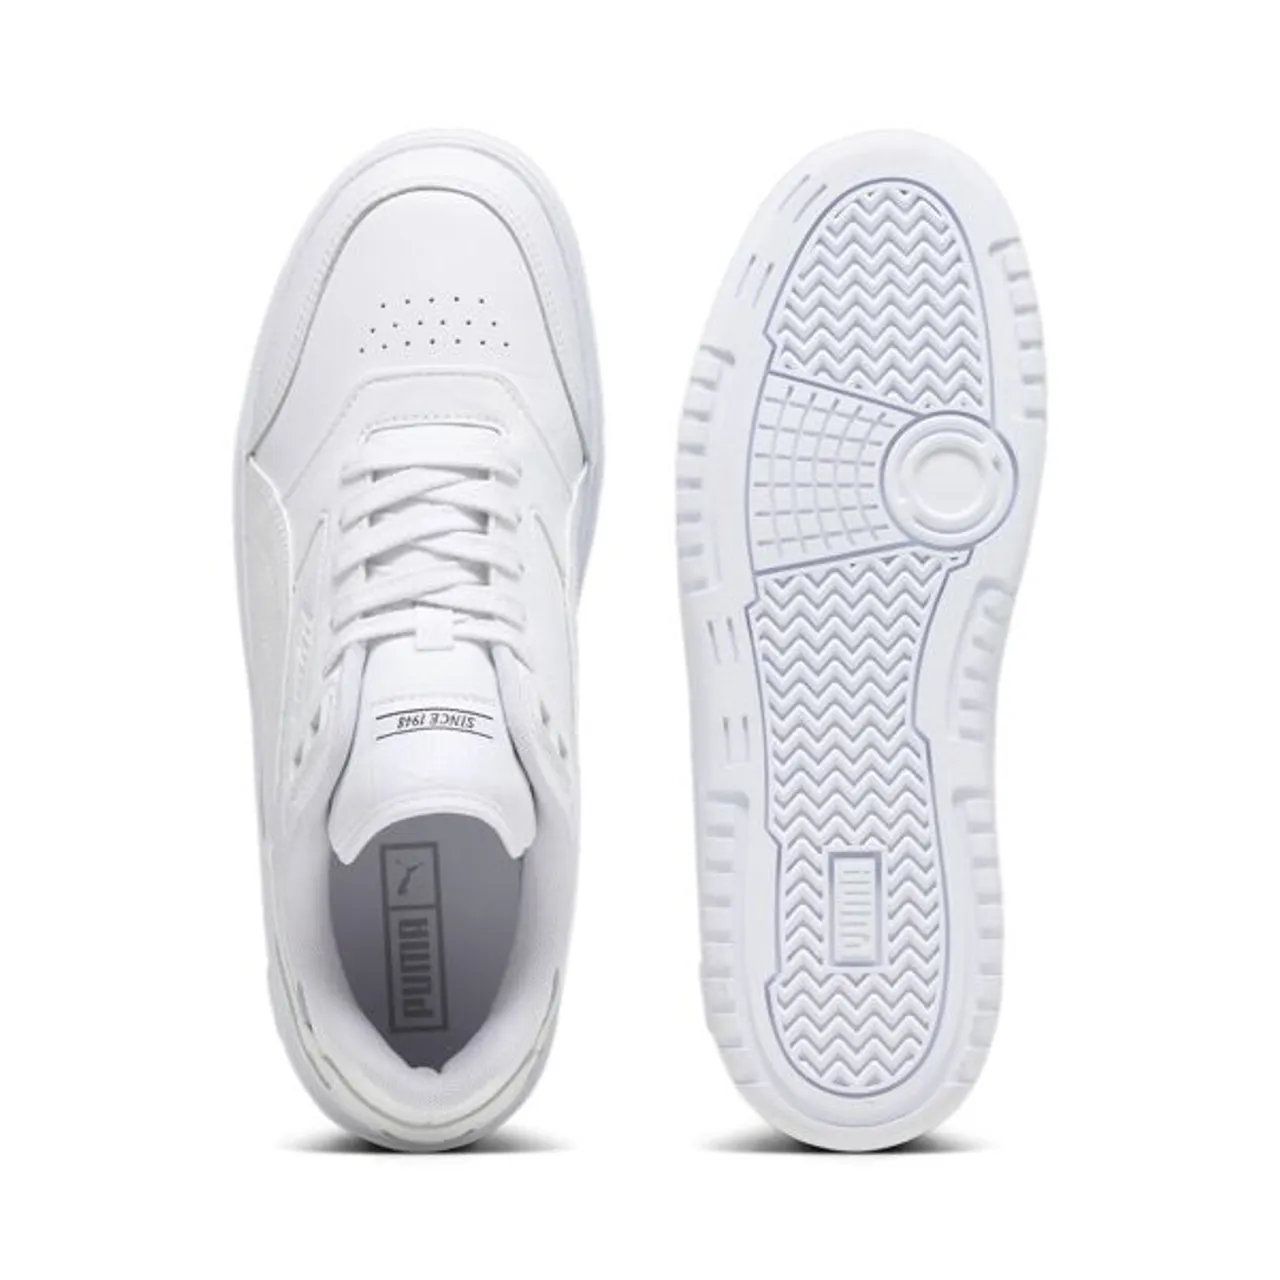 Sneaker PUMA "DOUBLECOURT" Gr. 41, weiß (puma white, cool light gray) Schuhe Puma